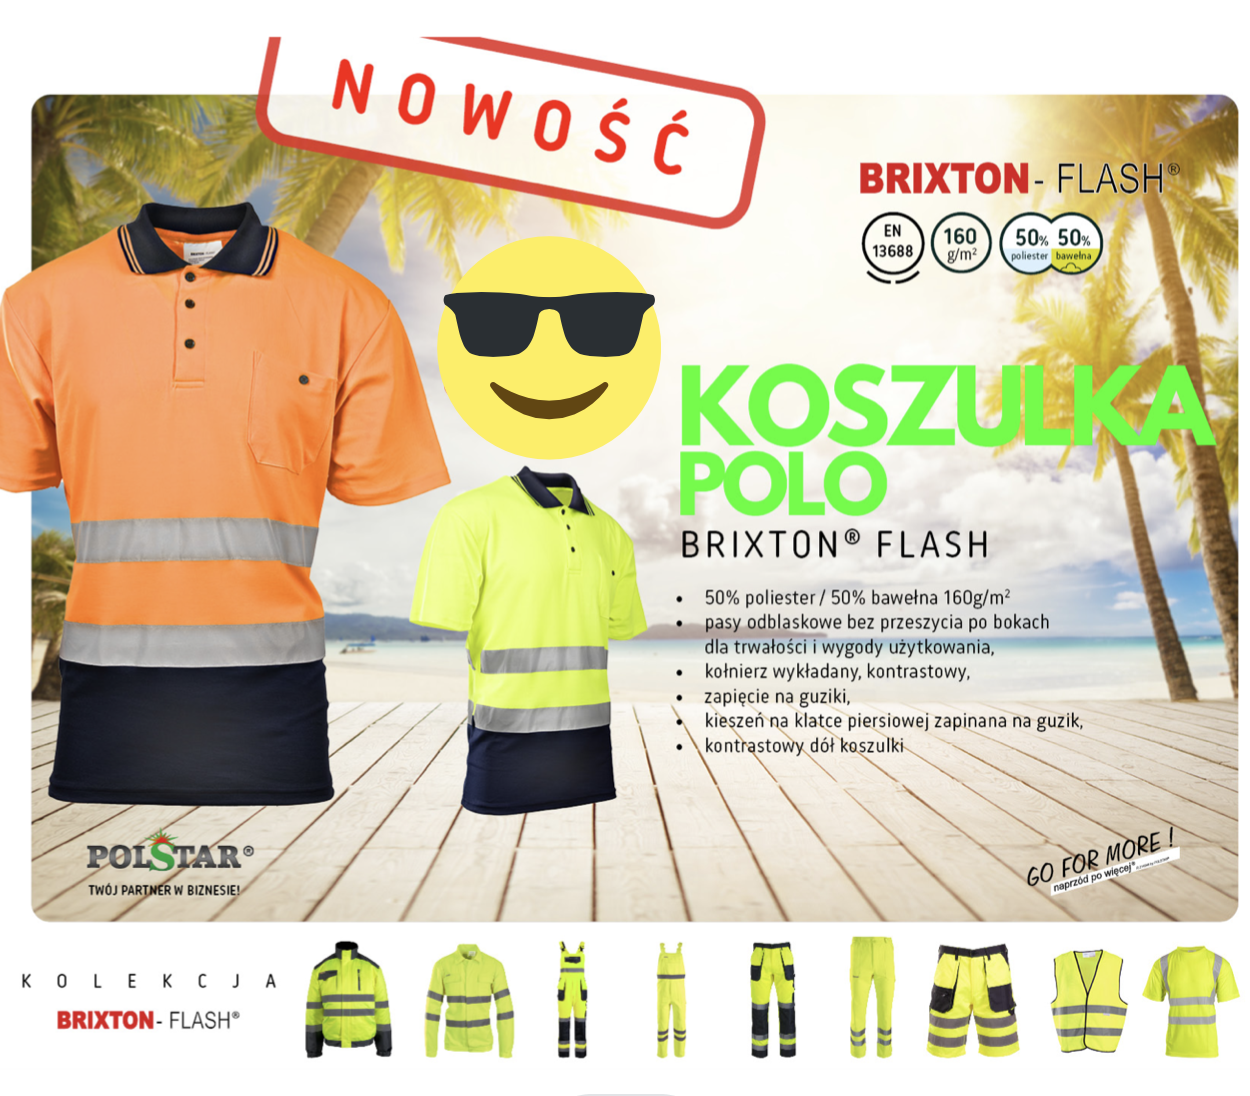 Ubrania robocze na lato Polstar – sklep i hurtownia Optimum BHP poleca odzież do pracy w wysokich temperaturach znanej marki Polstar!